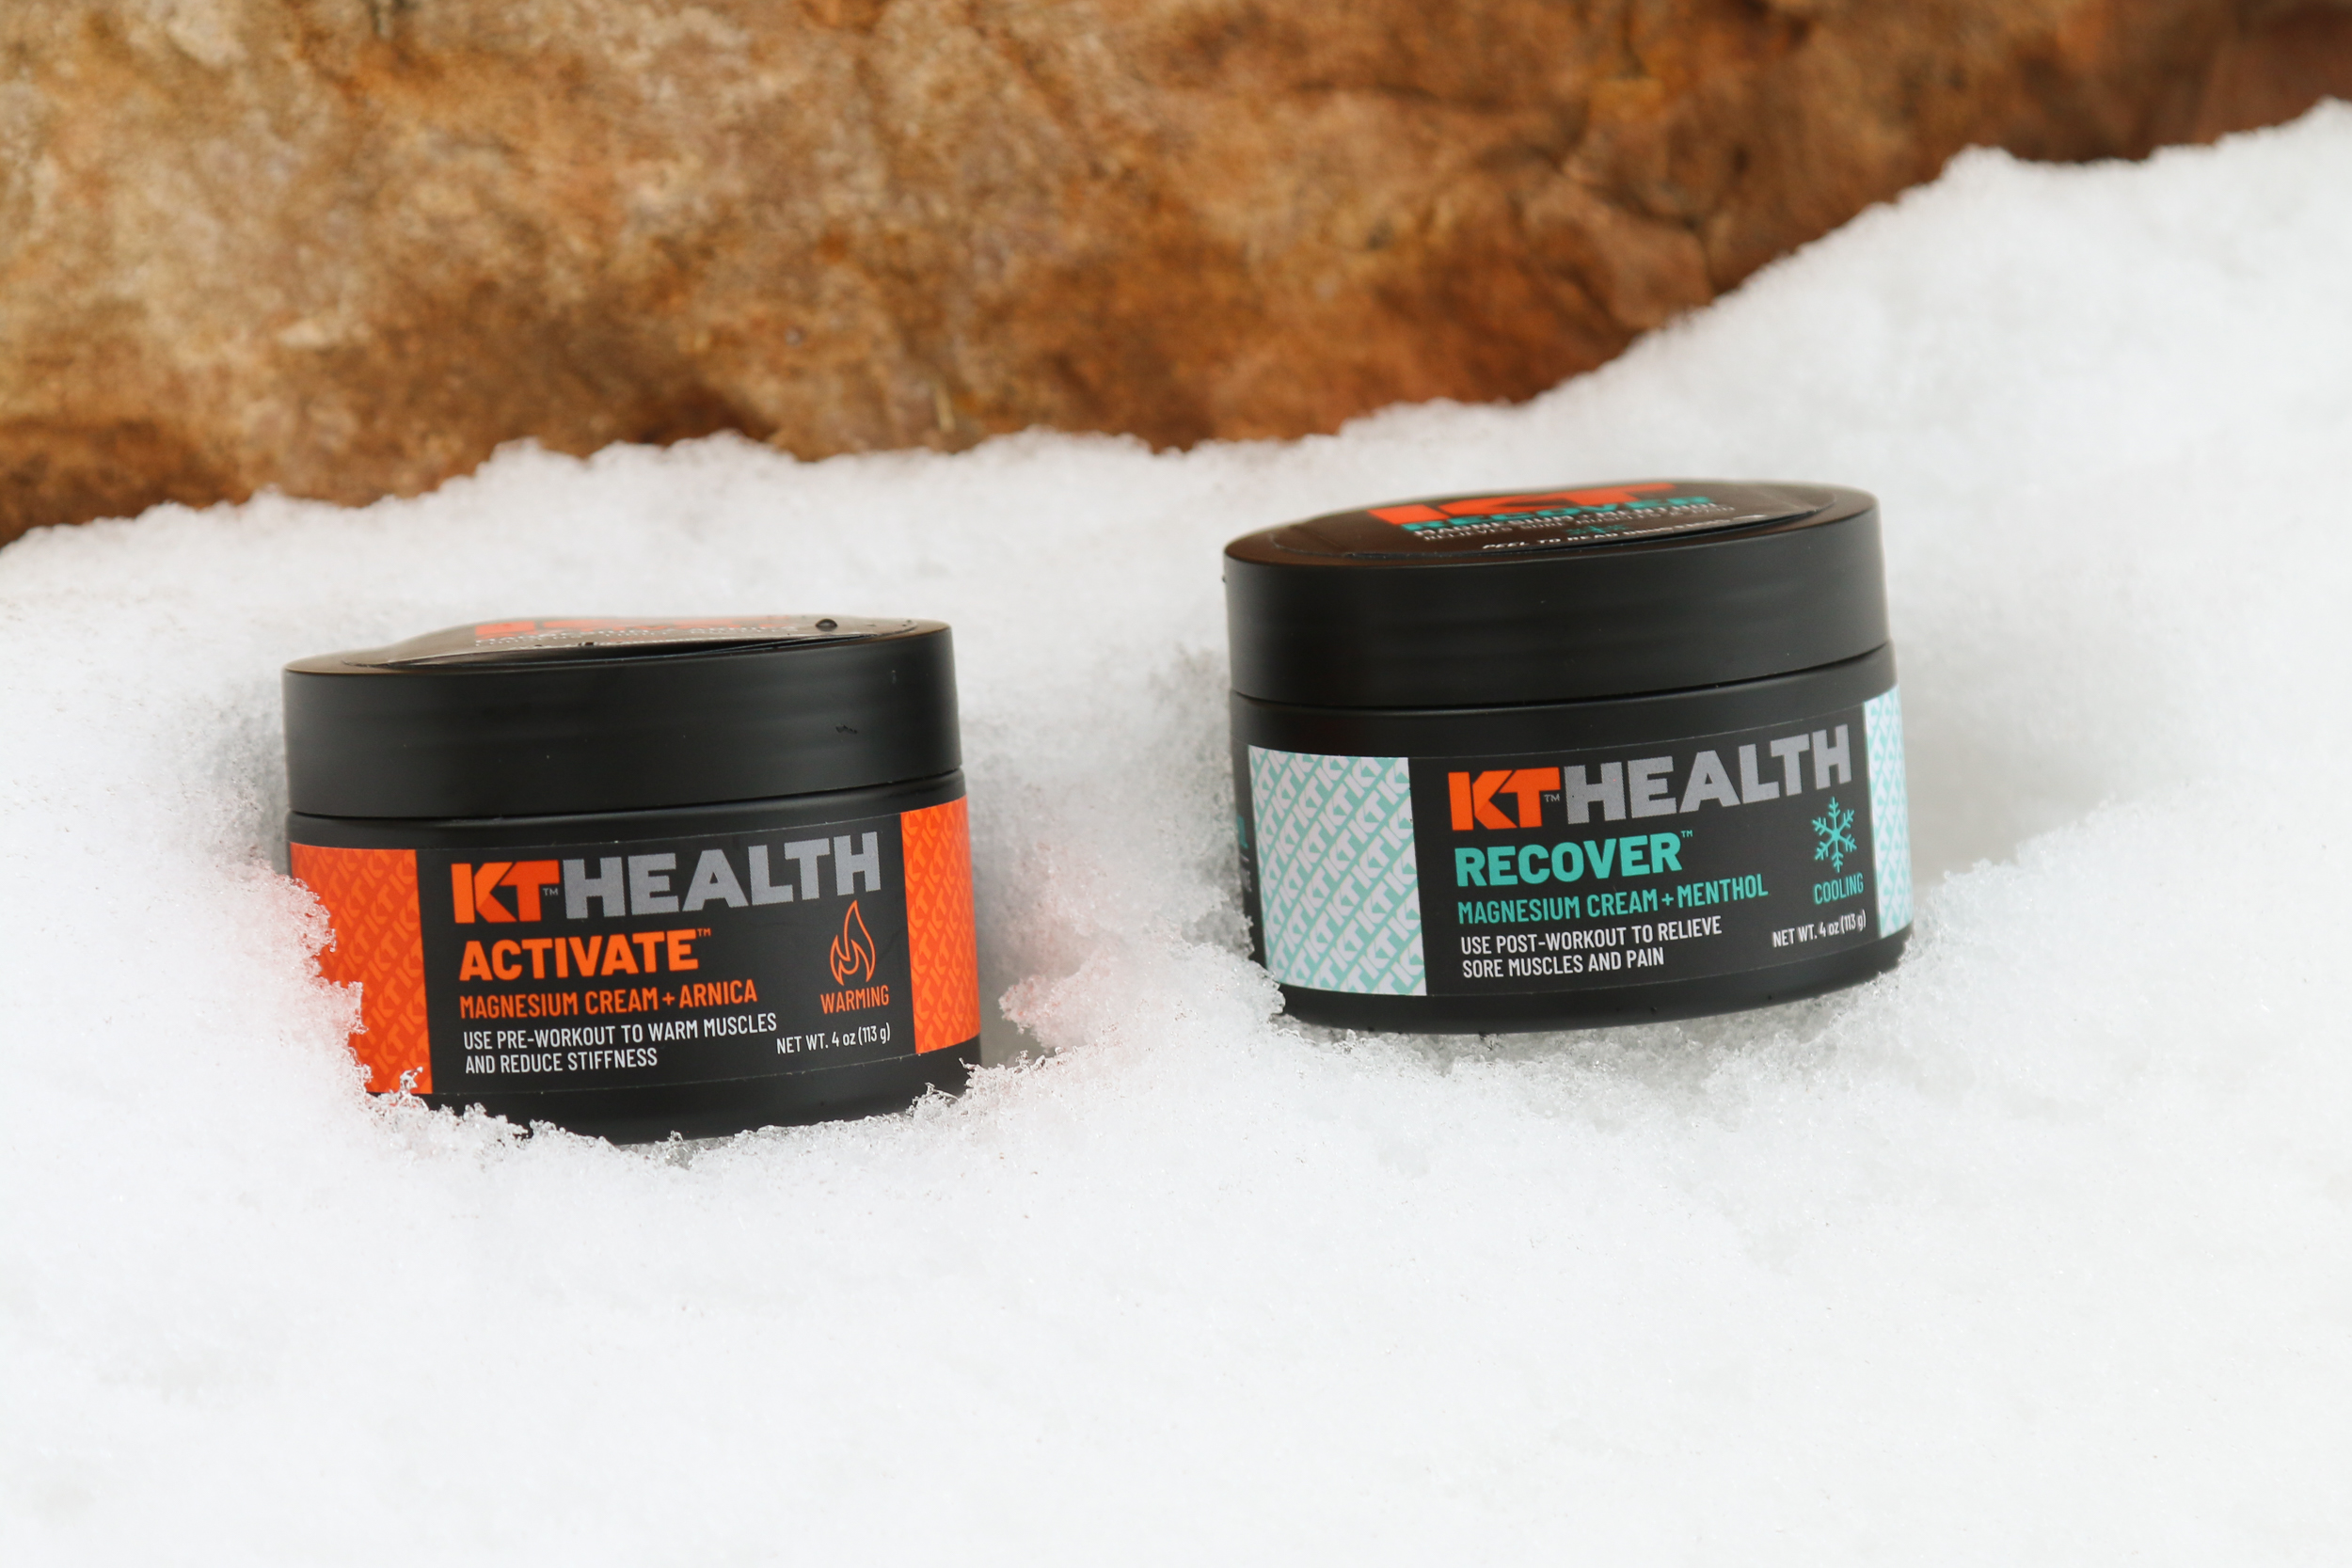 Los nuevos productos KT Ice van más allá de la cinta para ayudarle a prepararse, rendir y recuperarse